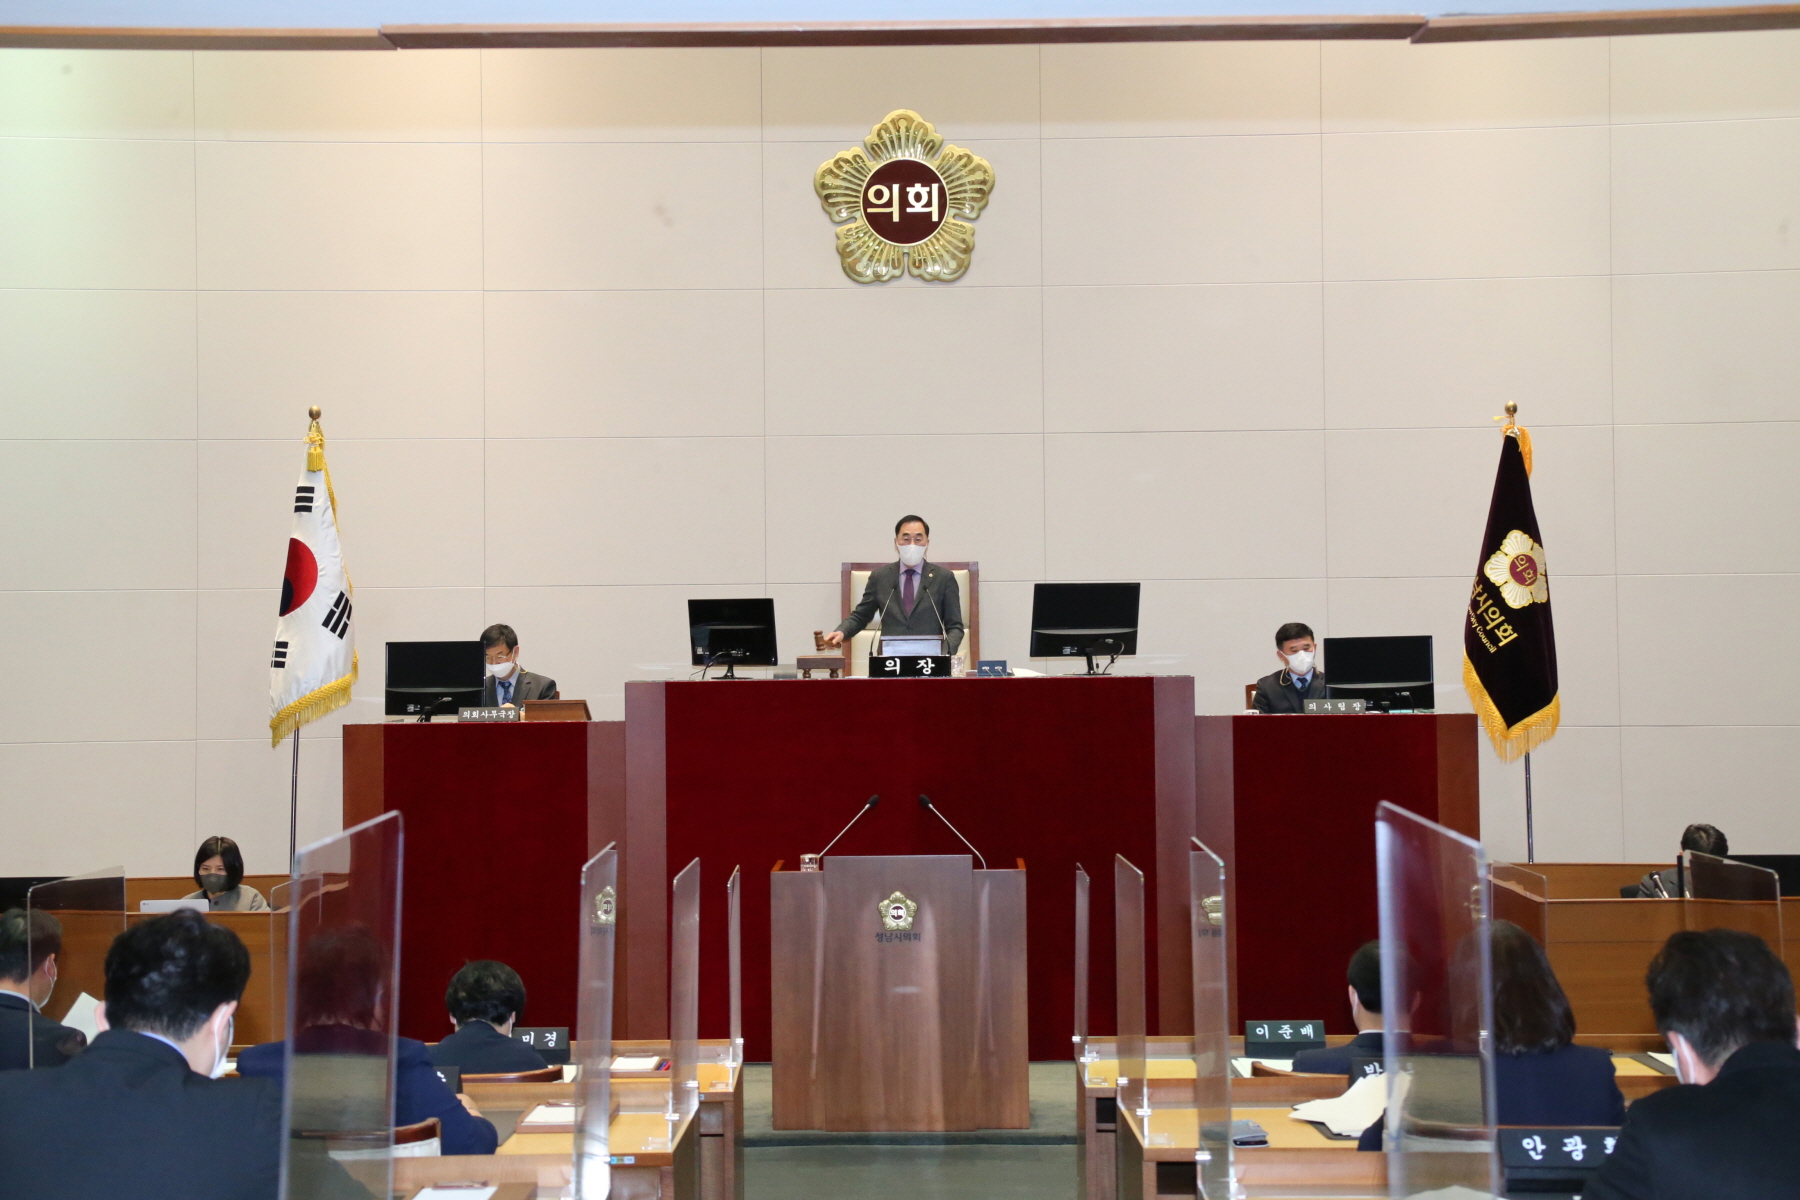 성남시의회, 지역사회 현안 해결에 고심 - 22일 폐회한 제261회 임시회서 새 의원발의 조례안 7건 통과 - 3